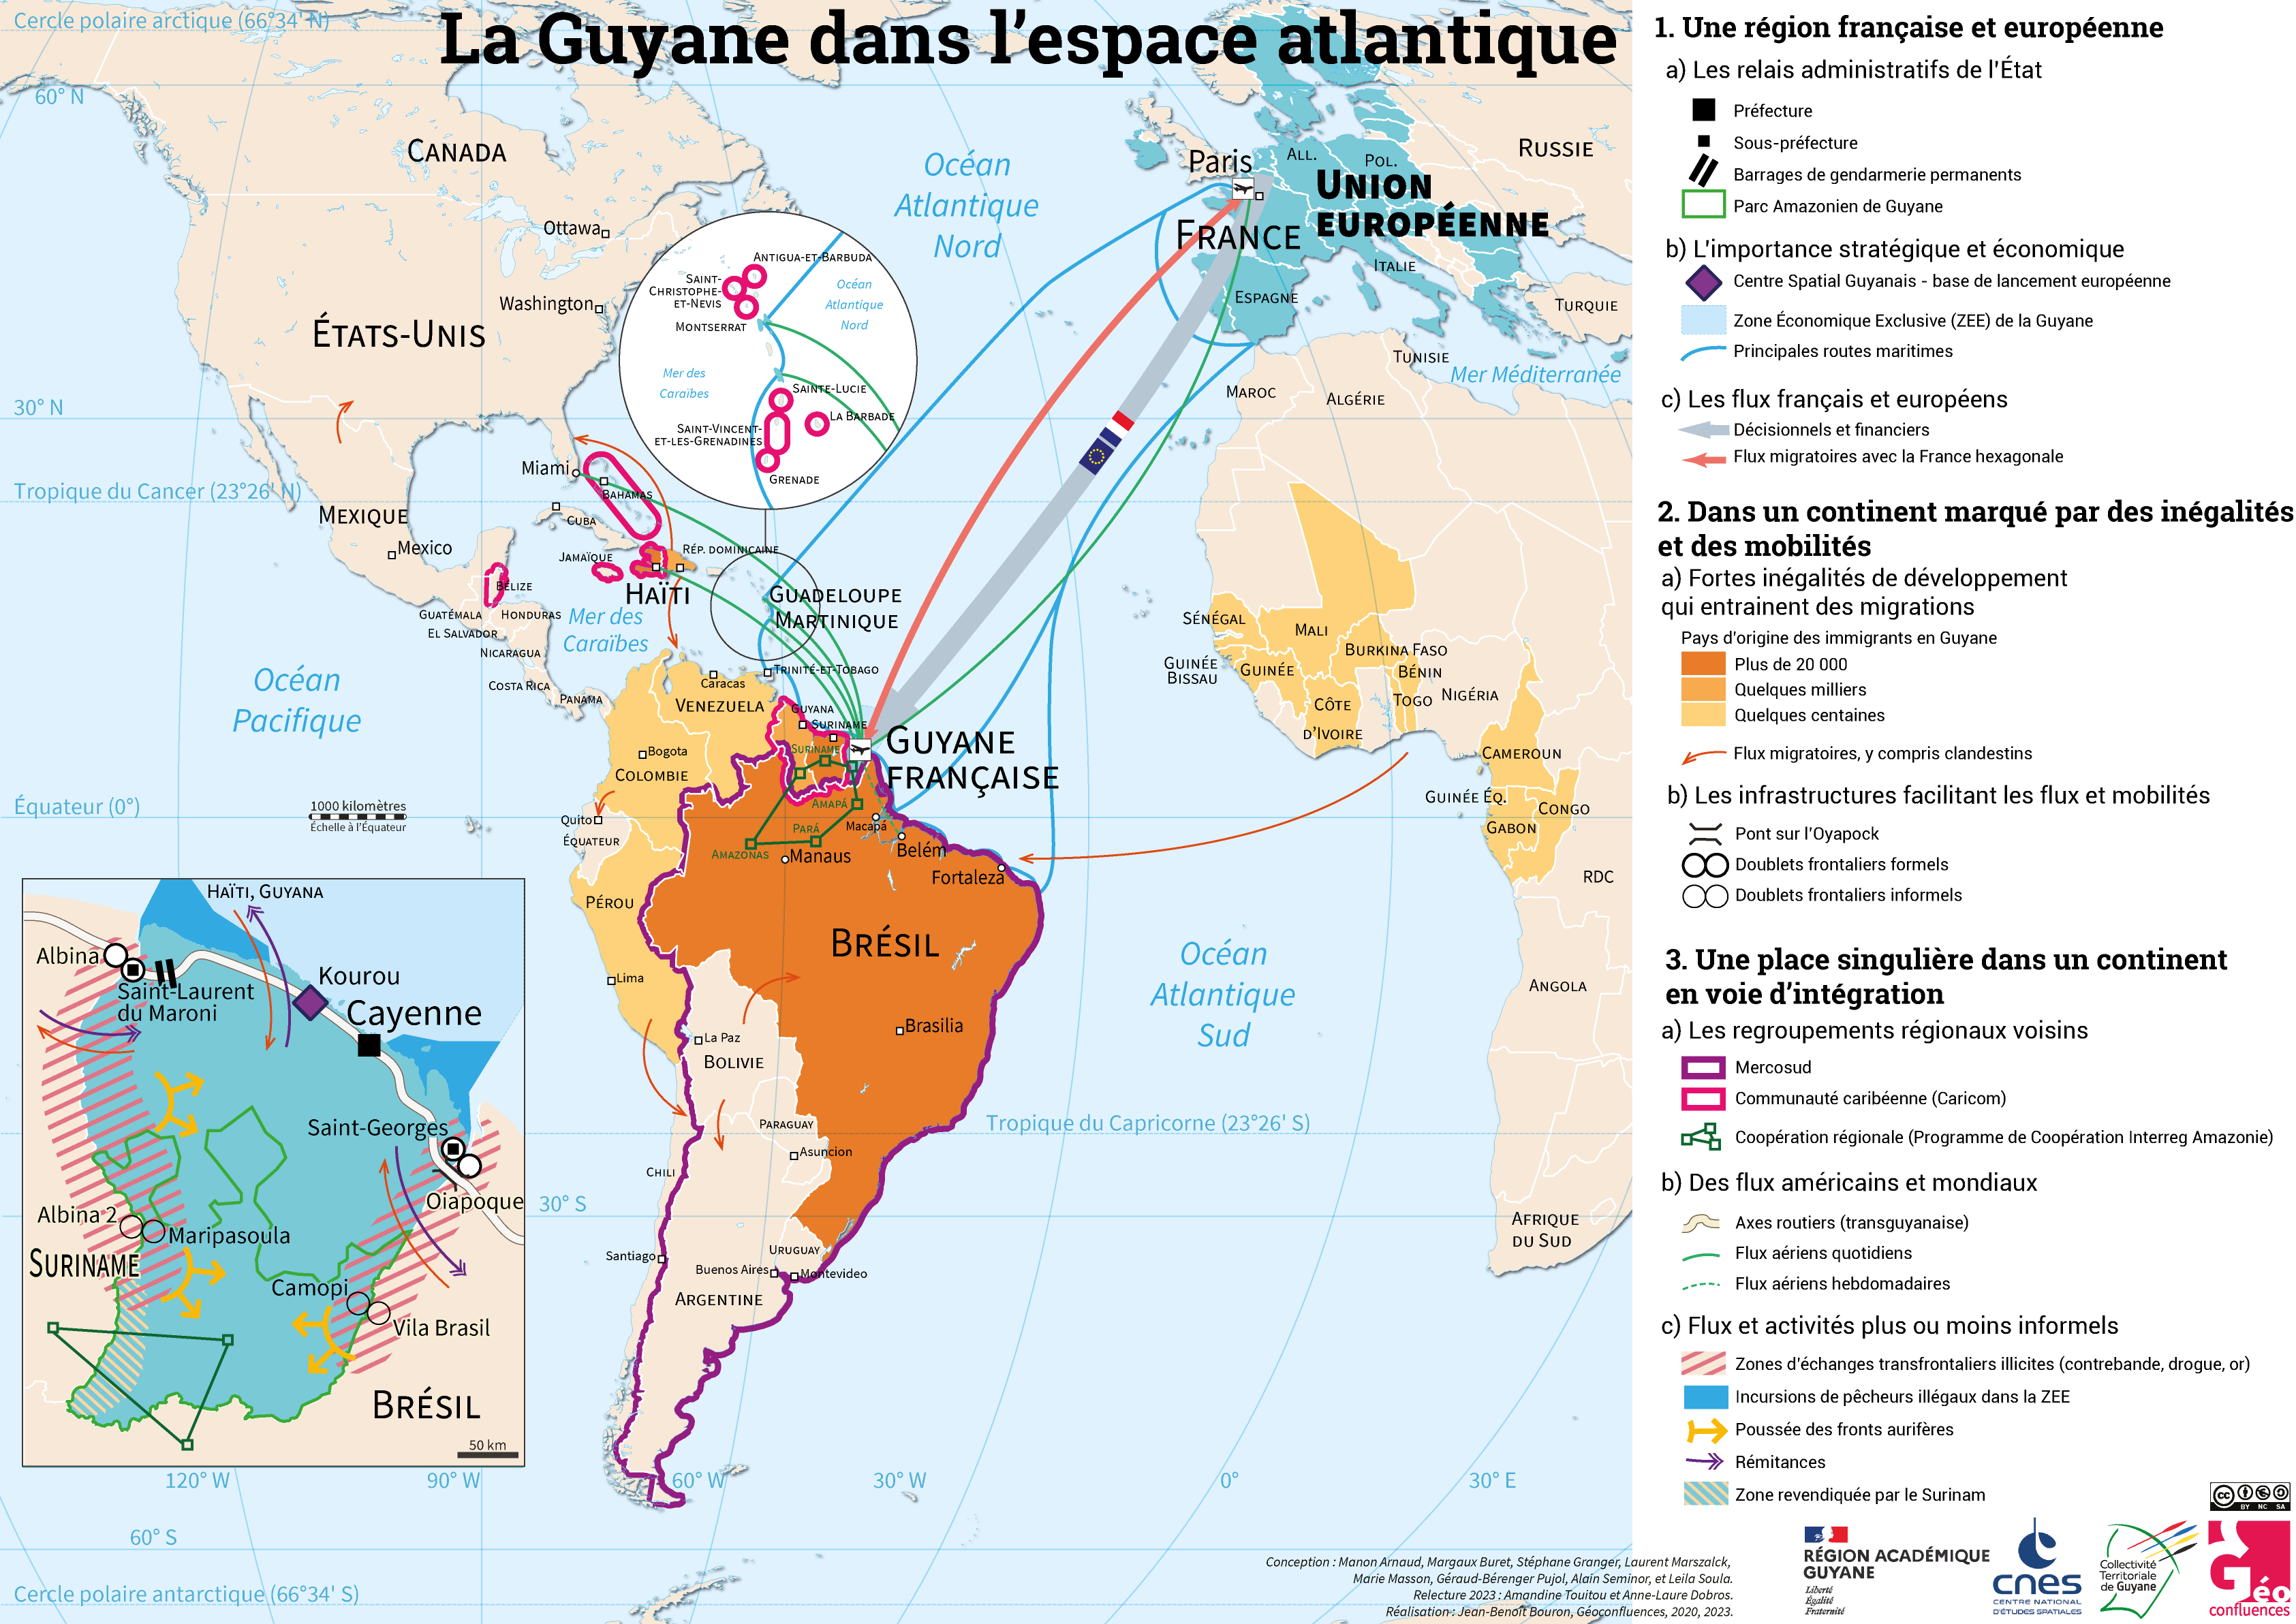 Guyane Atlantique JBB v4